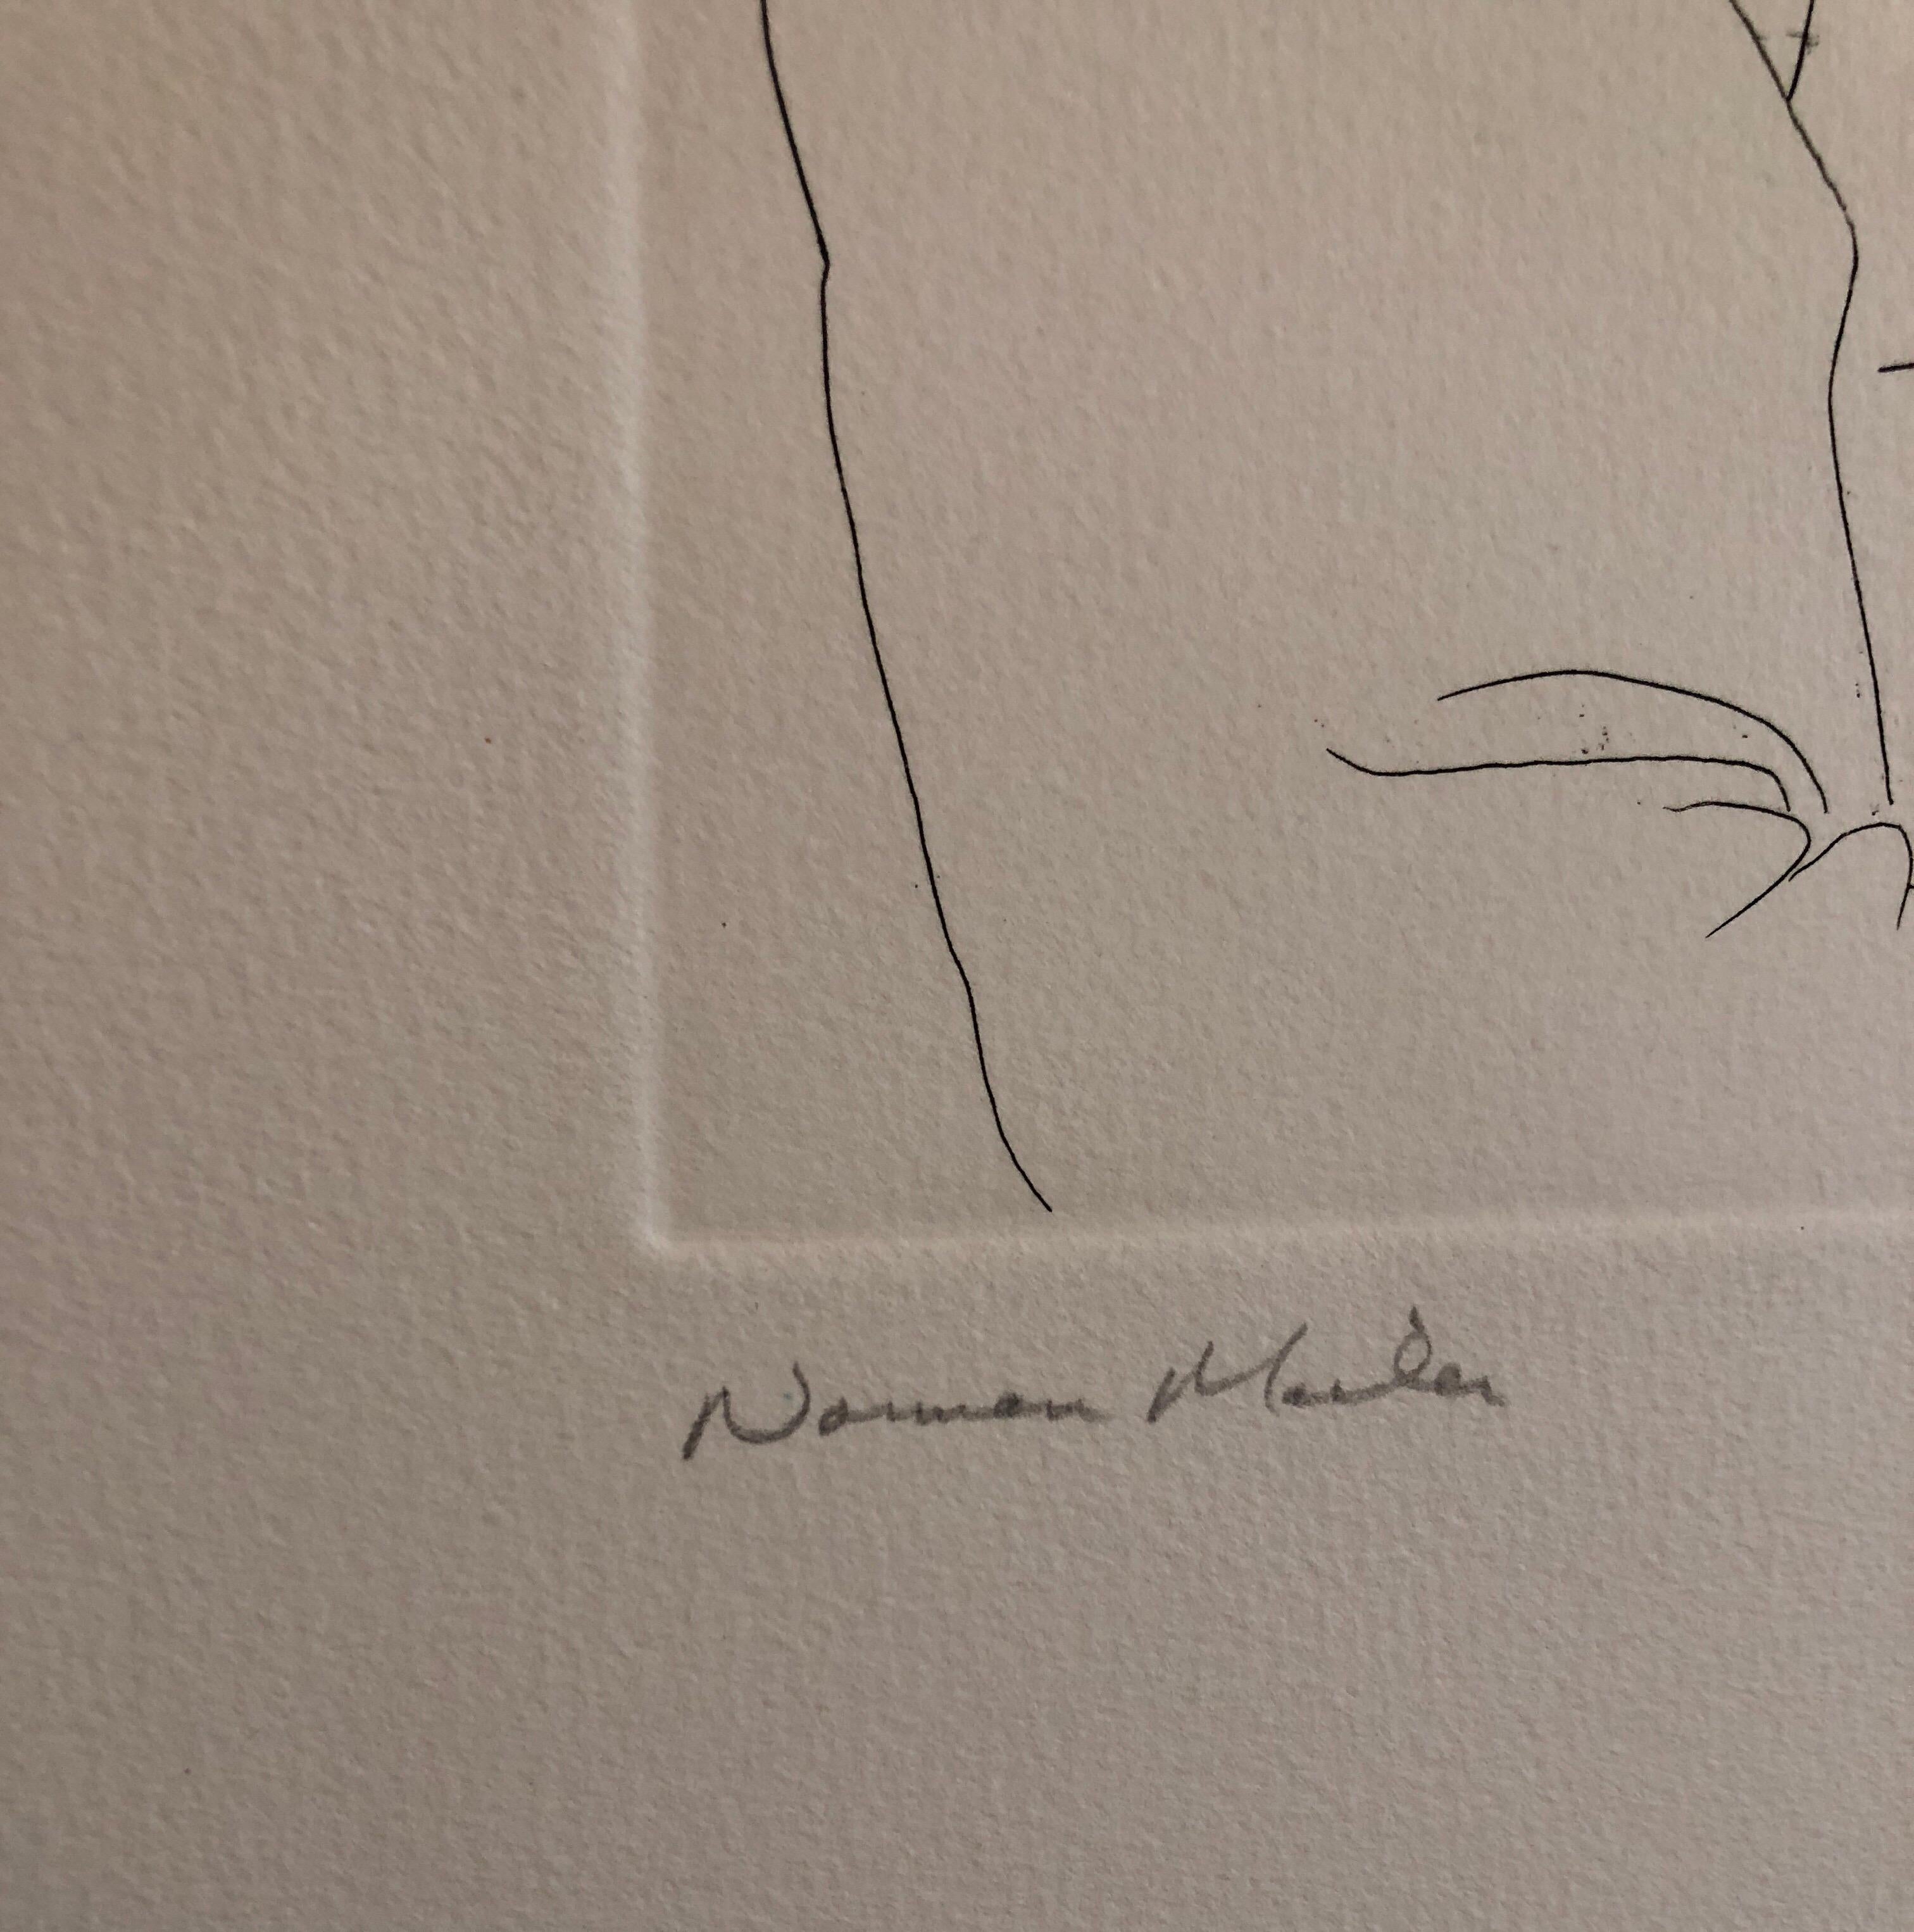 Portrait de Norman Mailer, lauréat du prix Pulitzer, gravure au trait - Marron Figurative Print par Knox Martin